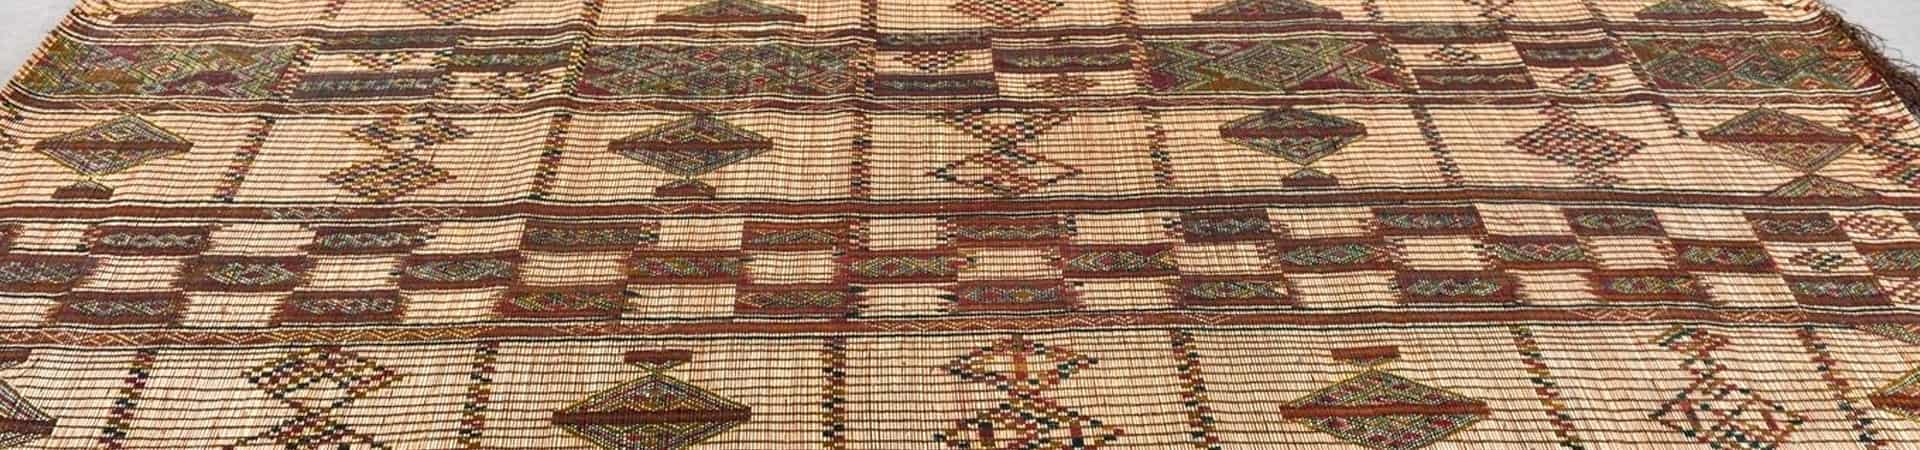 Mauritaanse matten